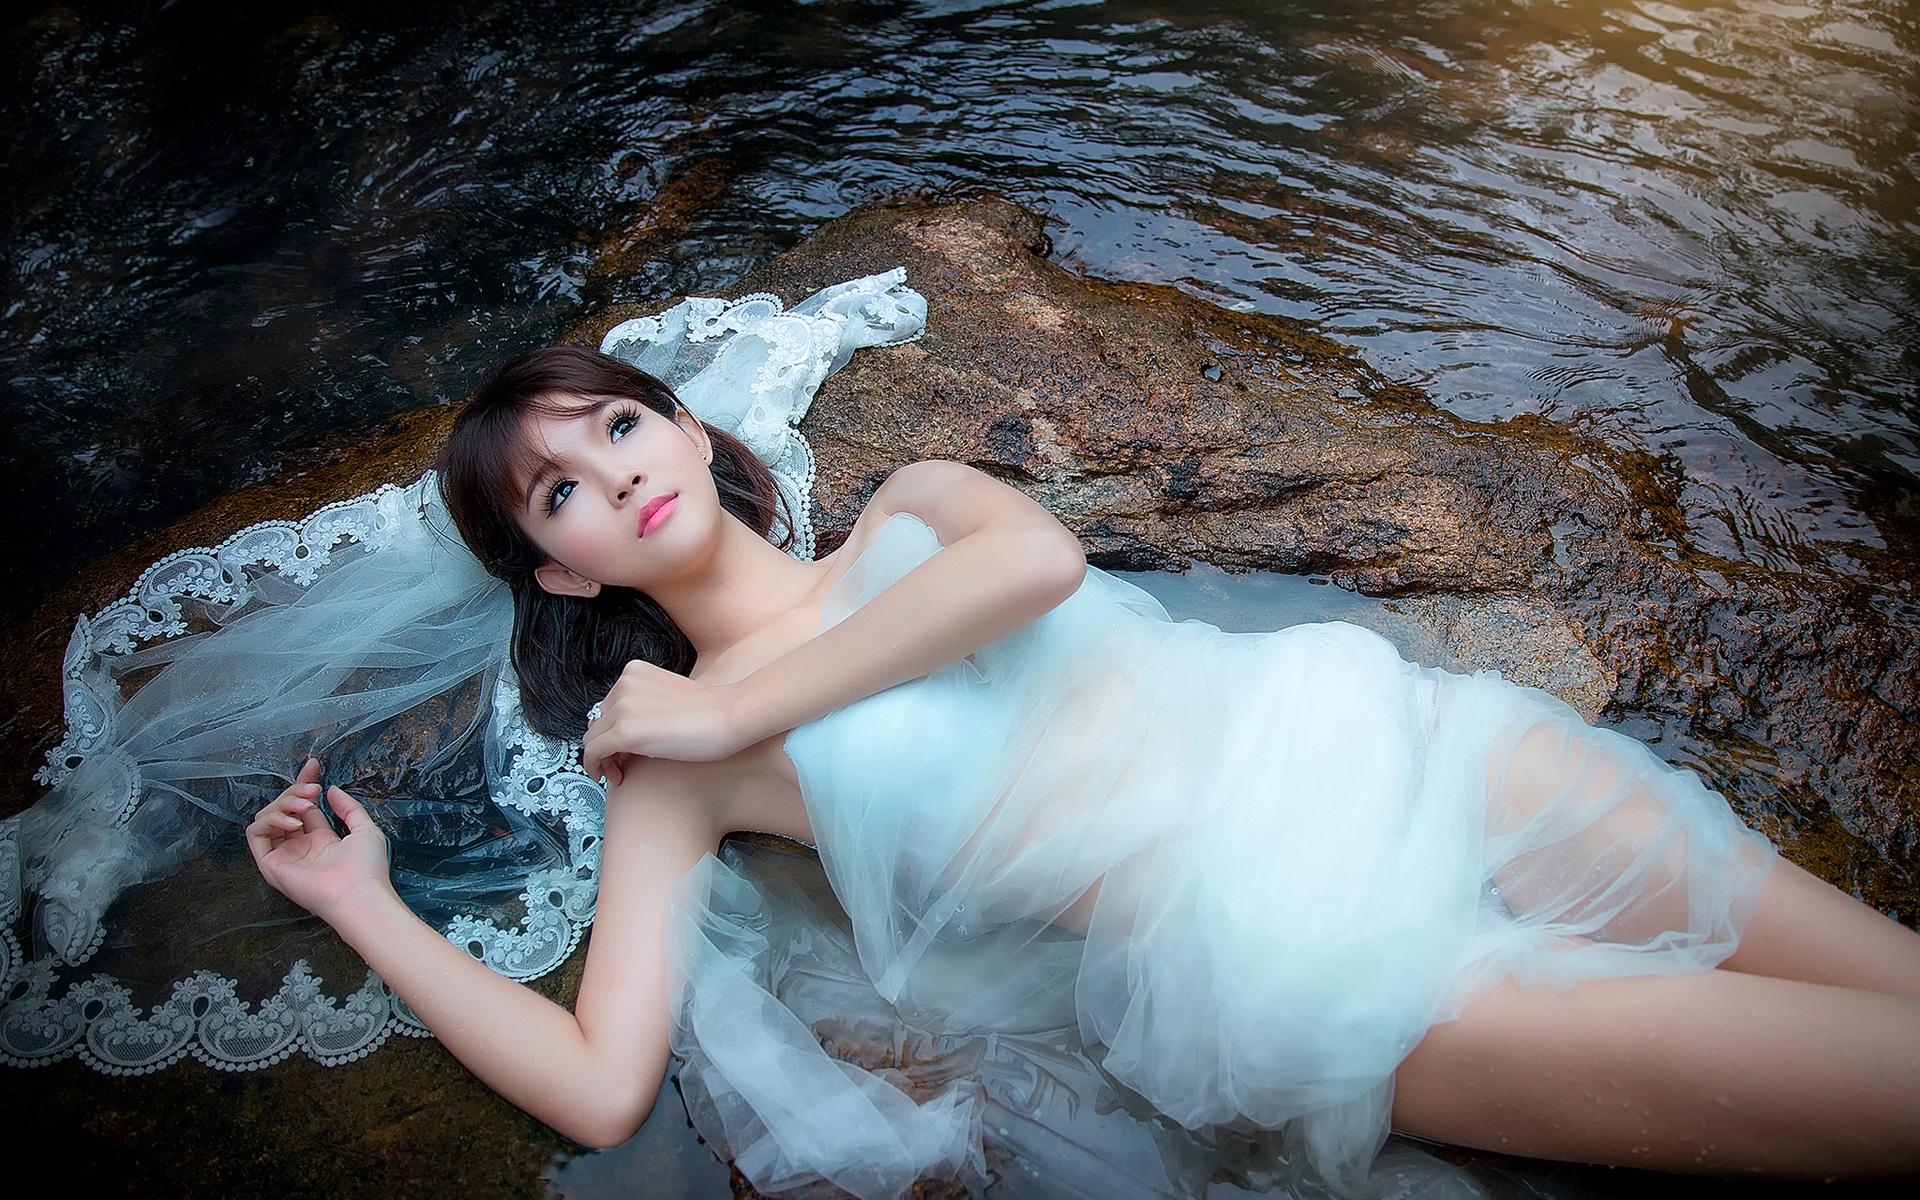 Stones-stream-beautiful-girl-white-dress_1920x1200.jpg